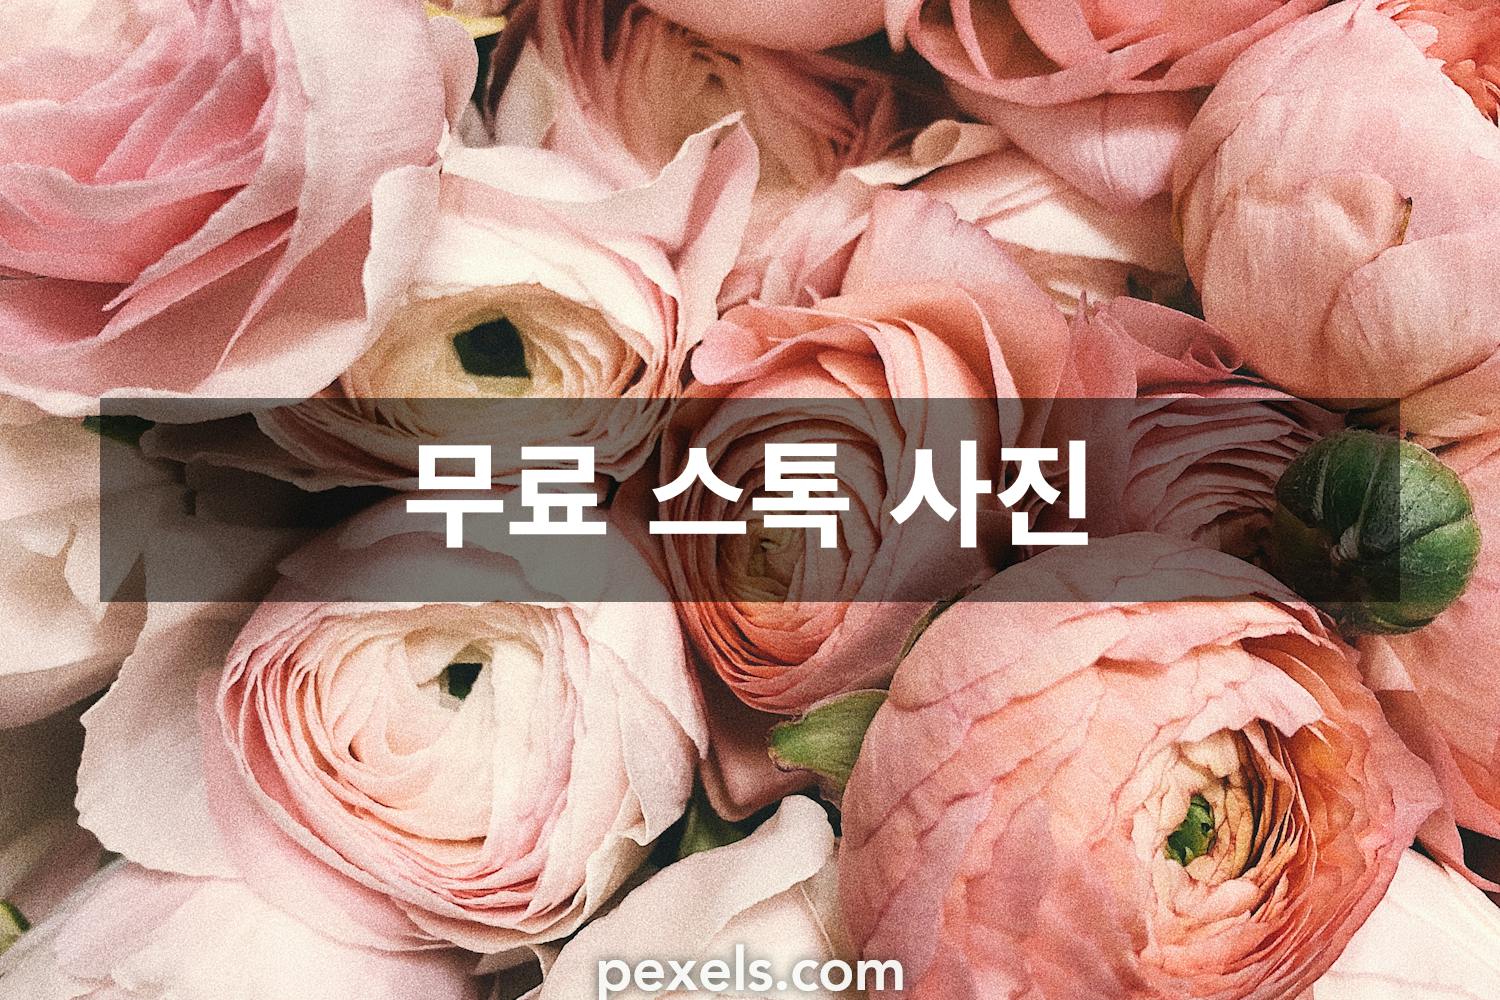 100,000+개의 최고의 꽃 사진 · 100% 무료 다운로드 · Pexels 스톡 사진